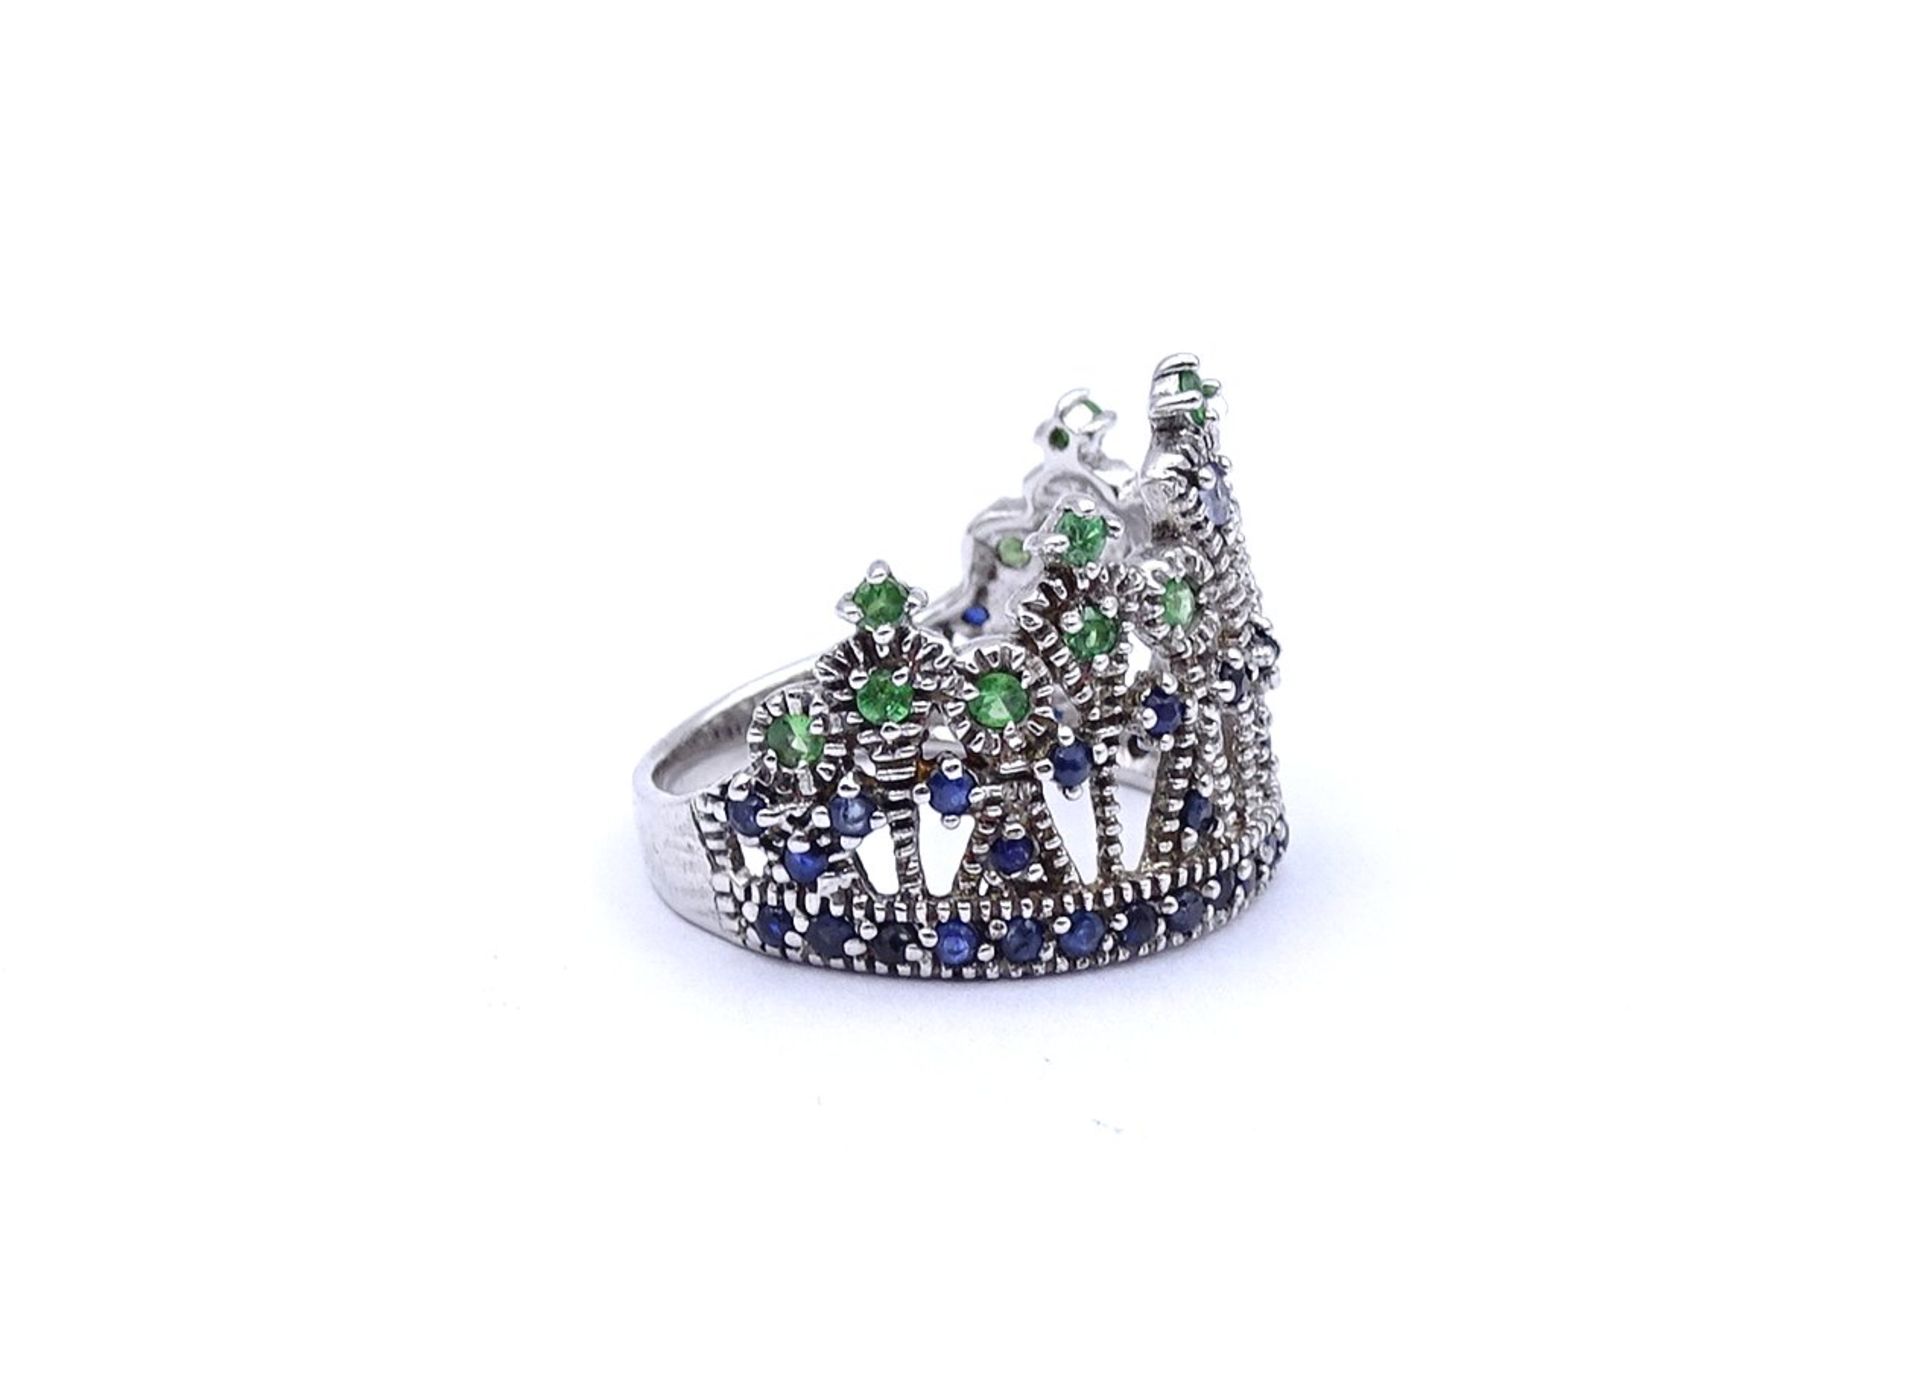 Silberring in Form einer Krone, mit Farbsteinen, 4,8g., RG 58 - Image 2 of 4